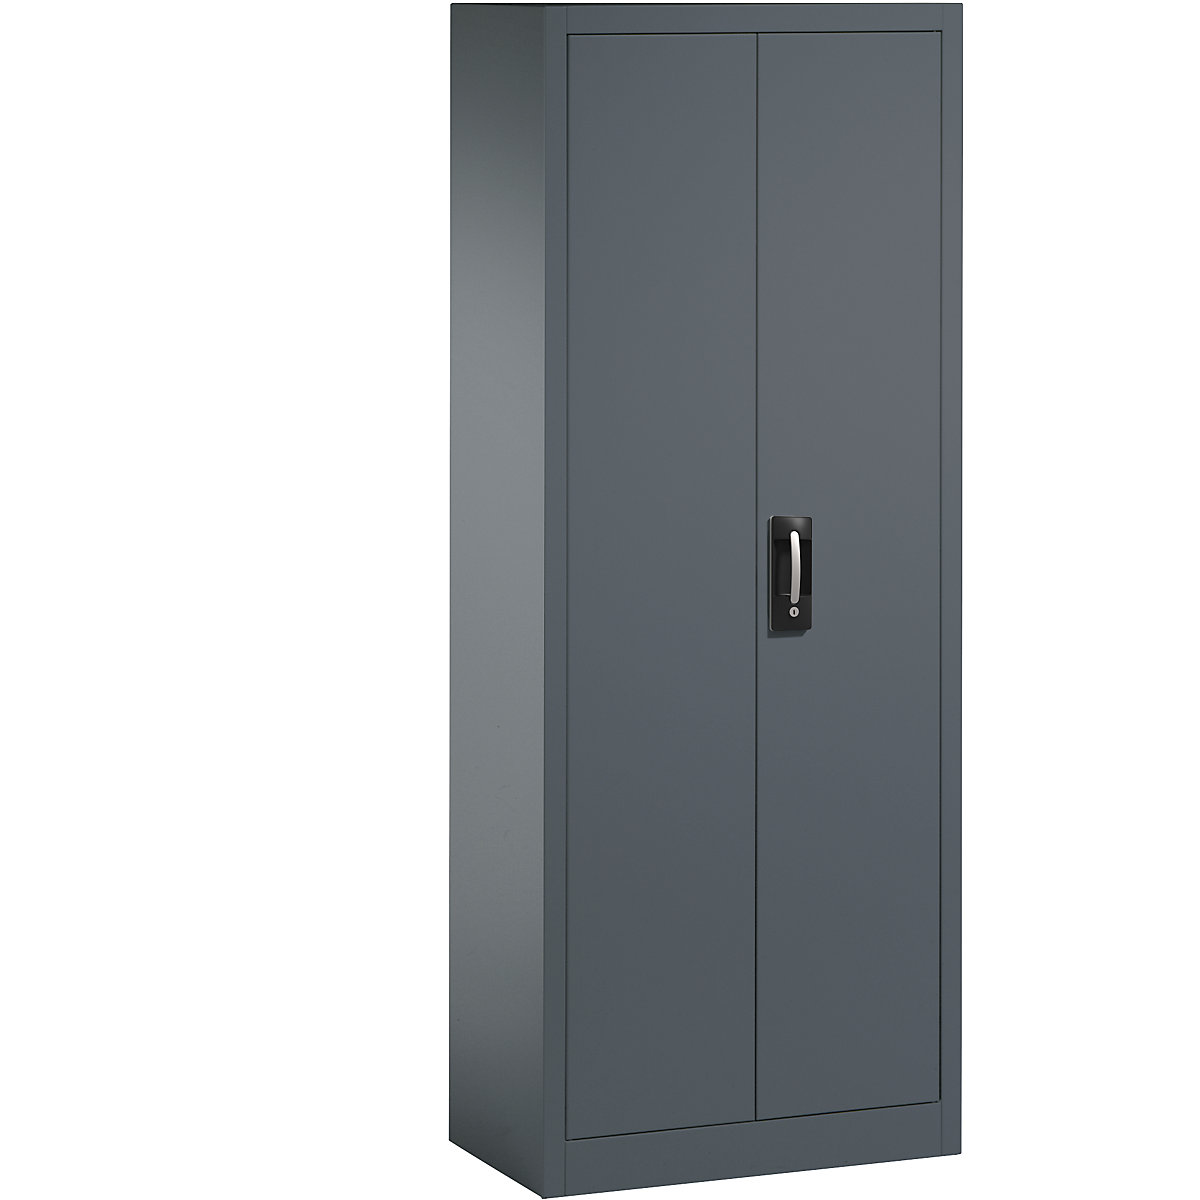 Steel cabinet with double doors – C+P